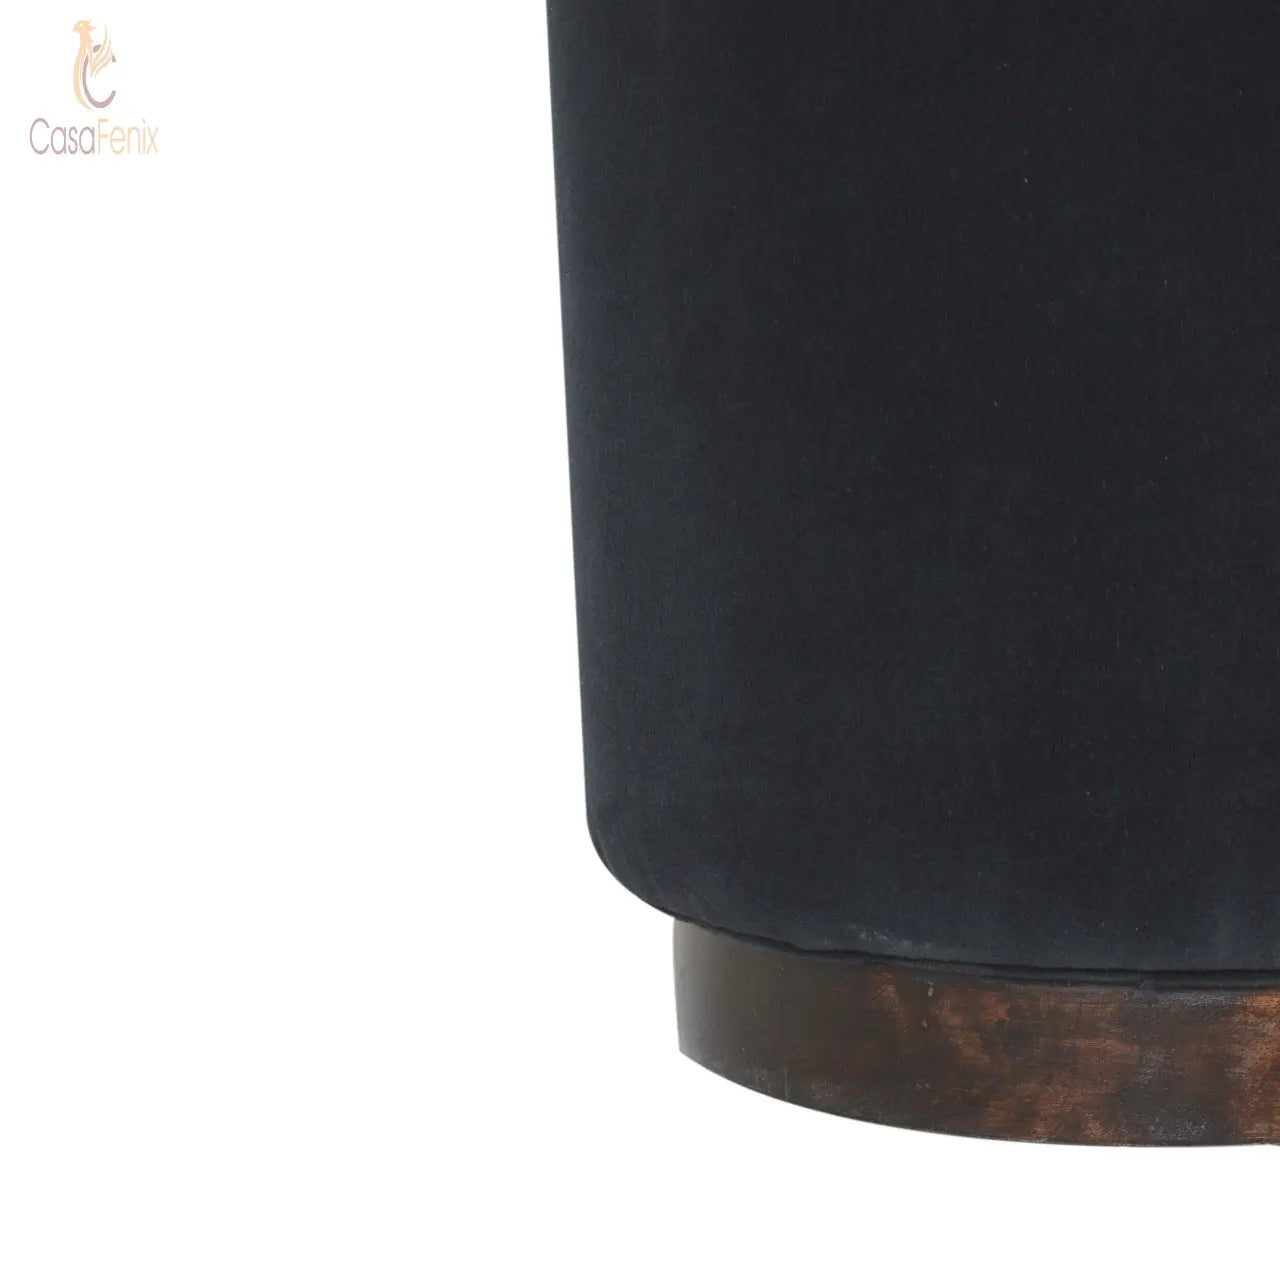 Black Velvet Upholstered Footstool with Wooden Base - CasaFenix